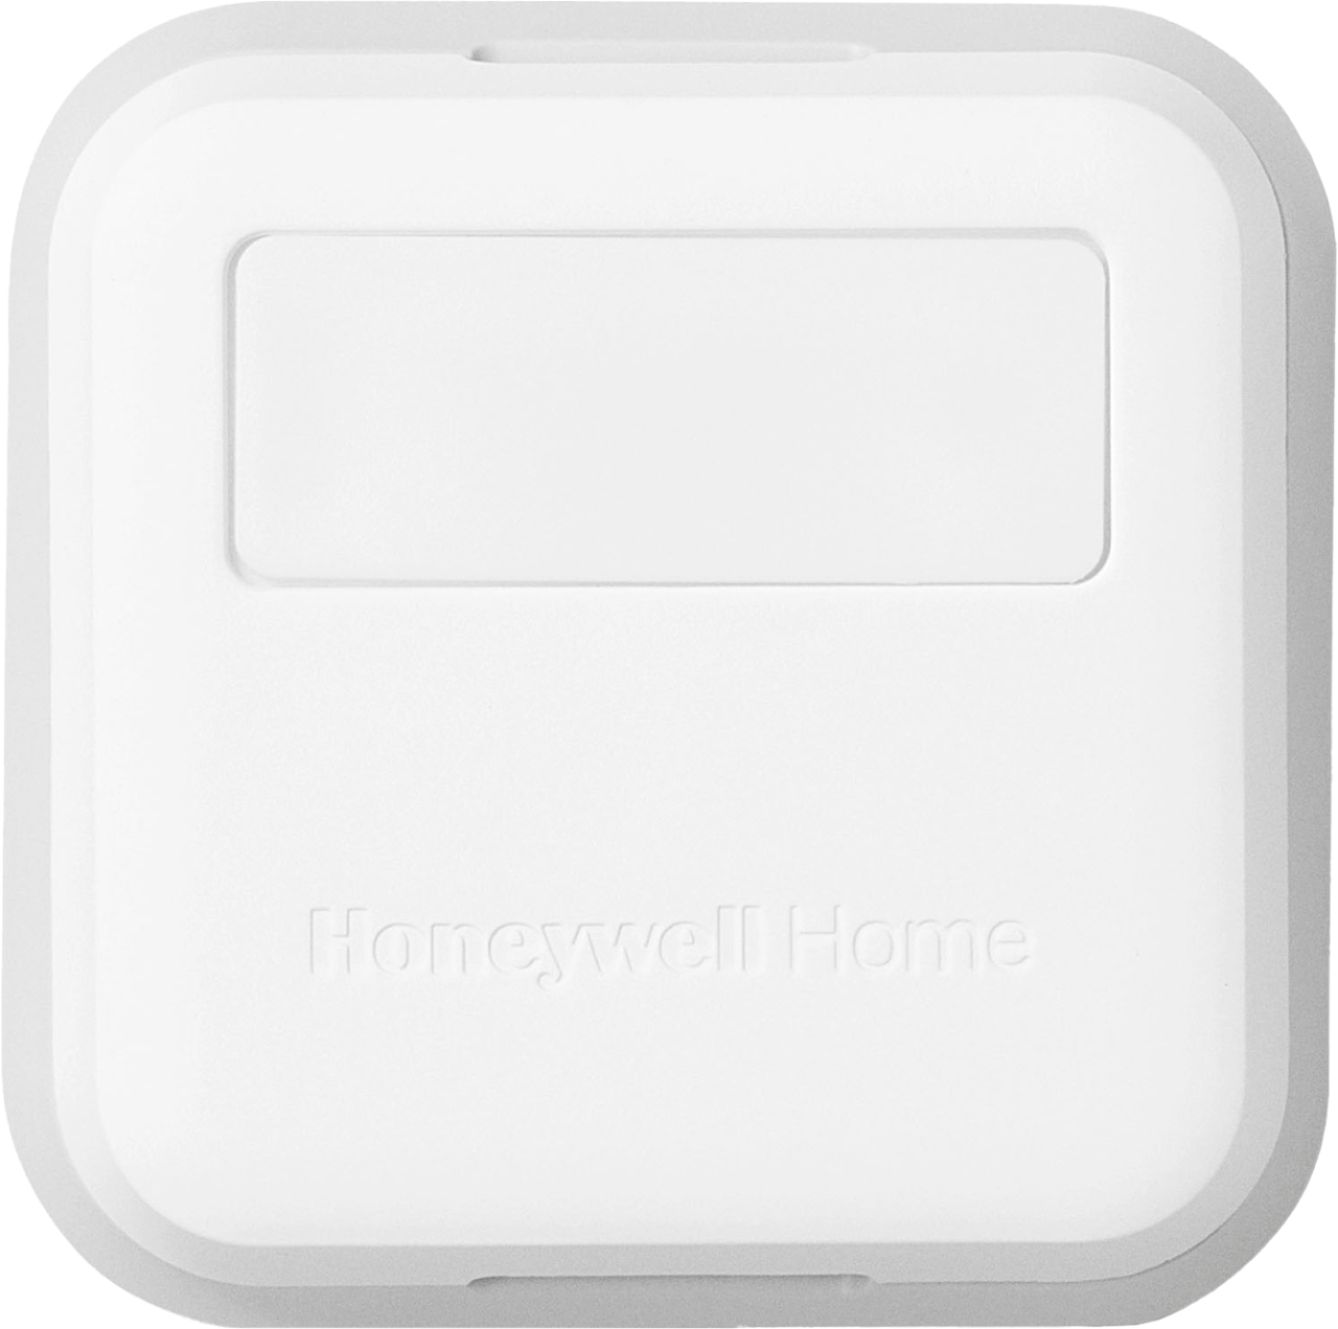 Honeywell C7189U1005 Remote Indoor Temperature Sensor for